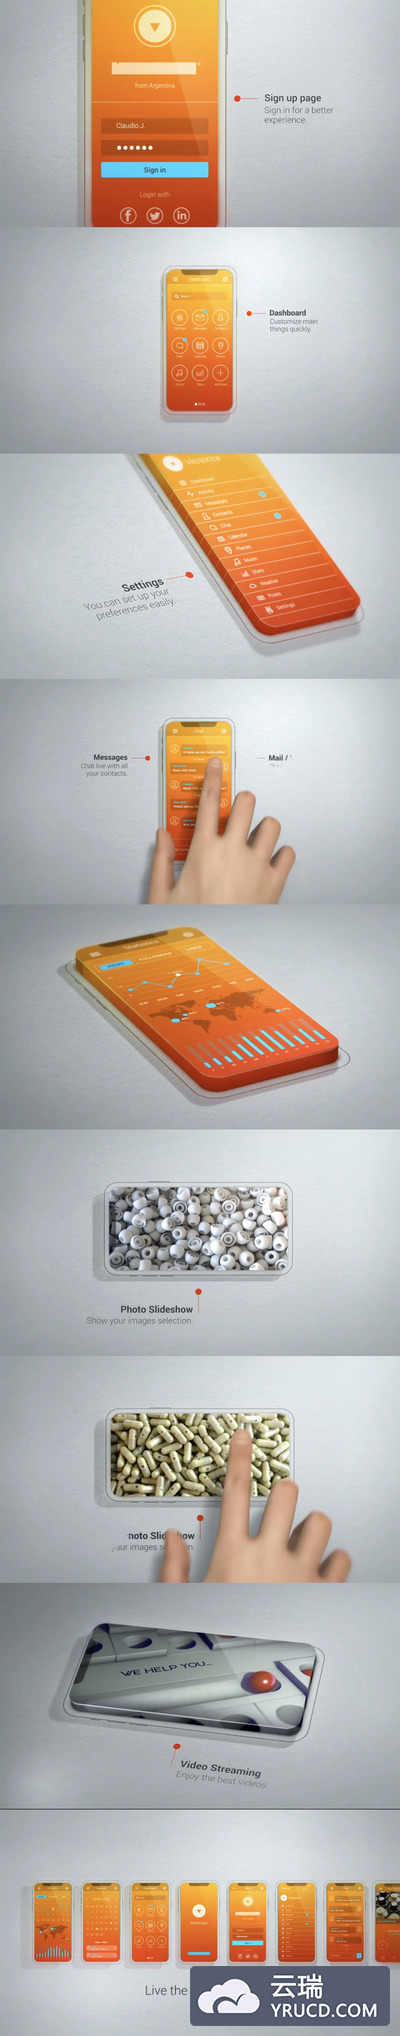 酷炫前卫的iPhone X APP创意设计展示视频AE模板[AEP]